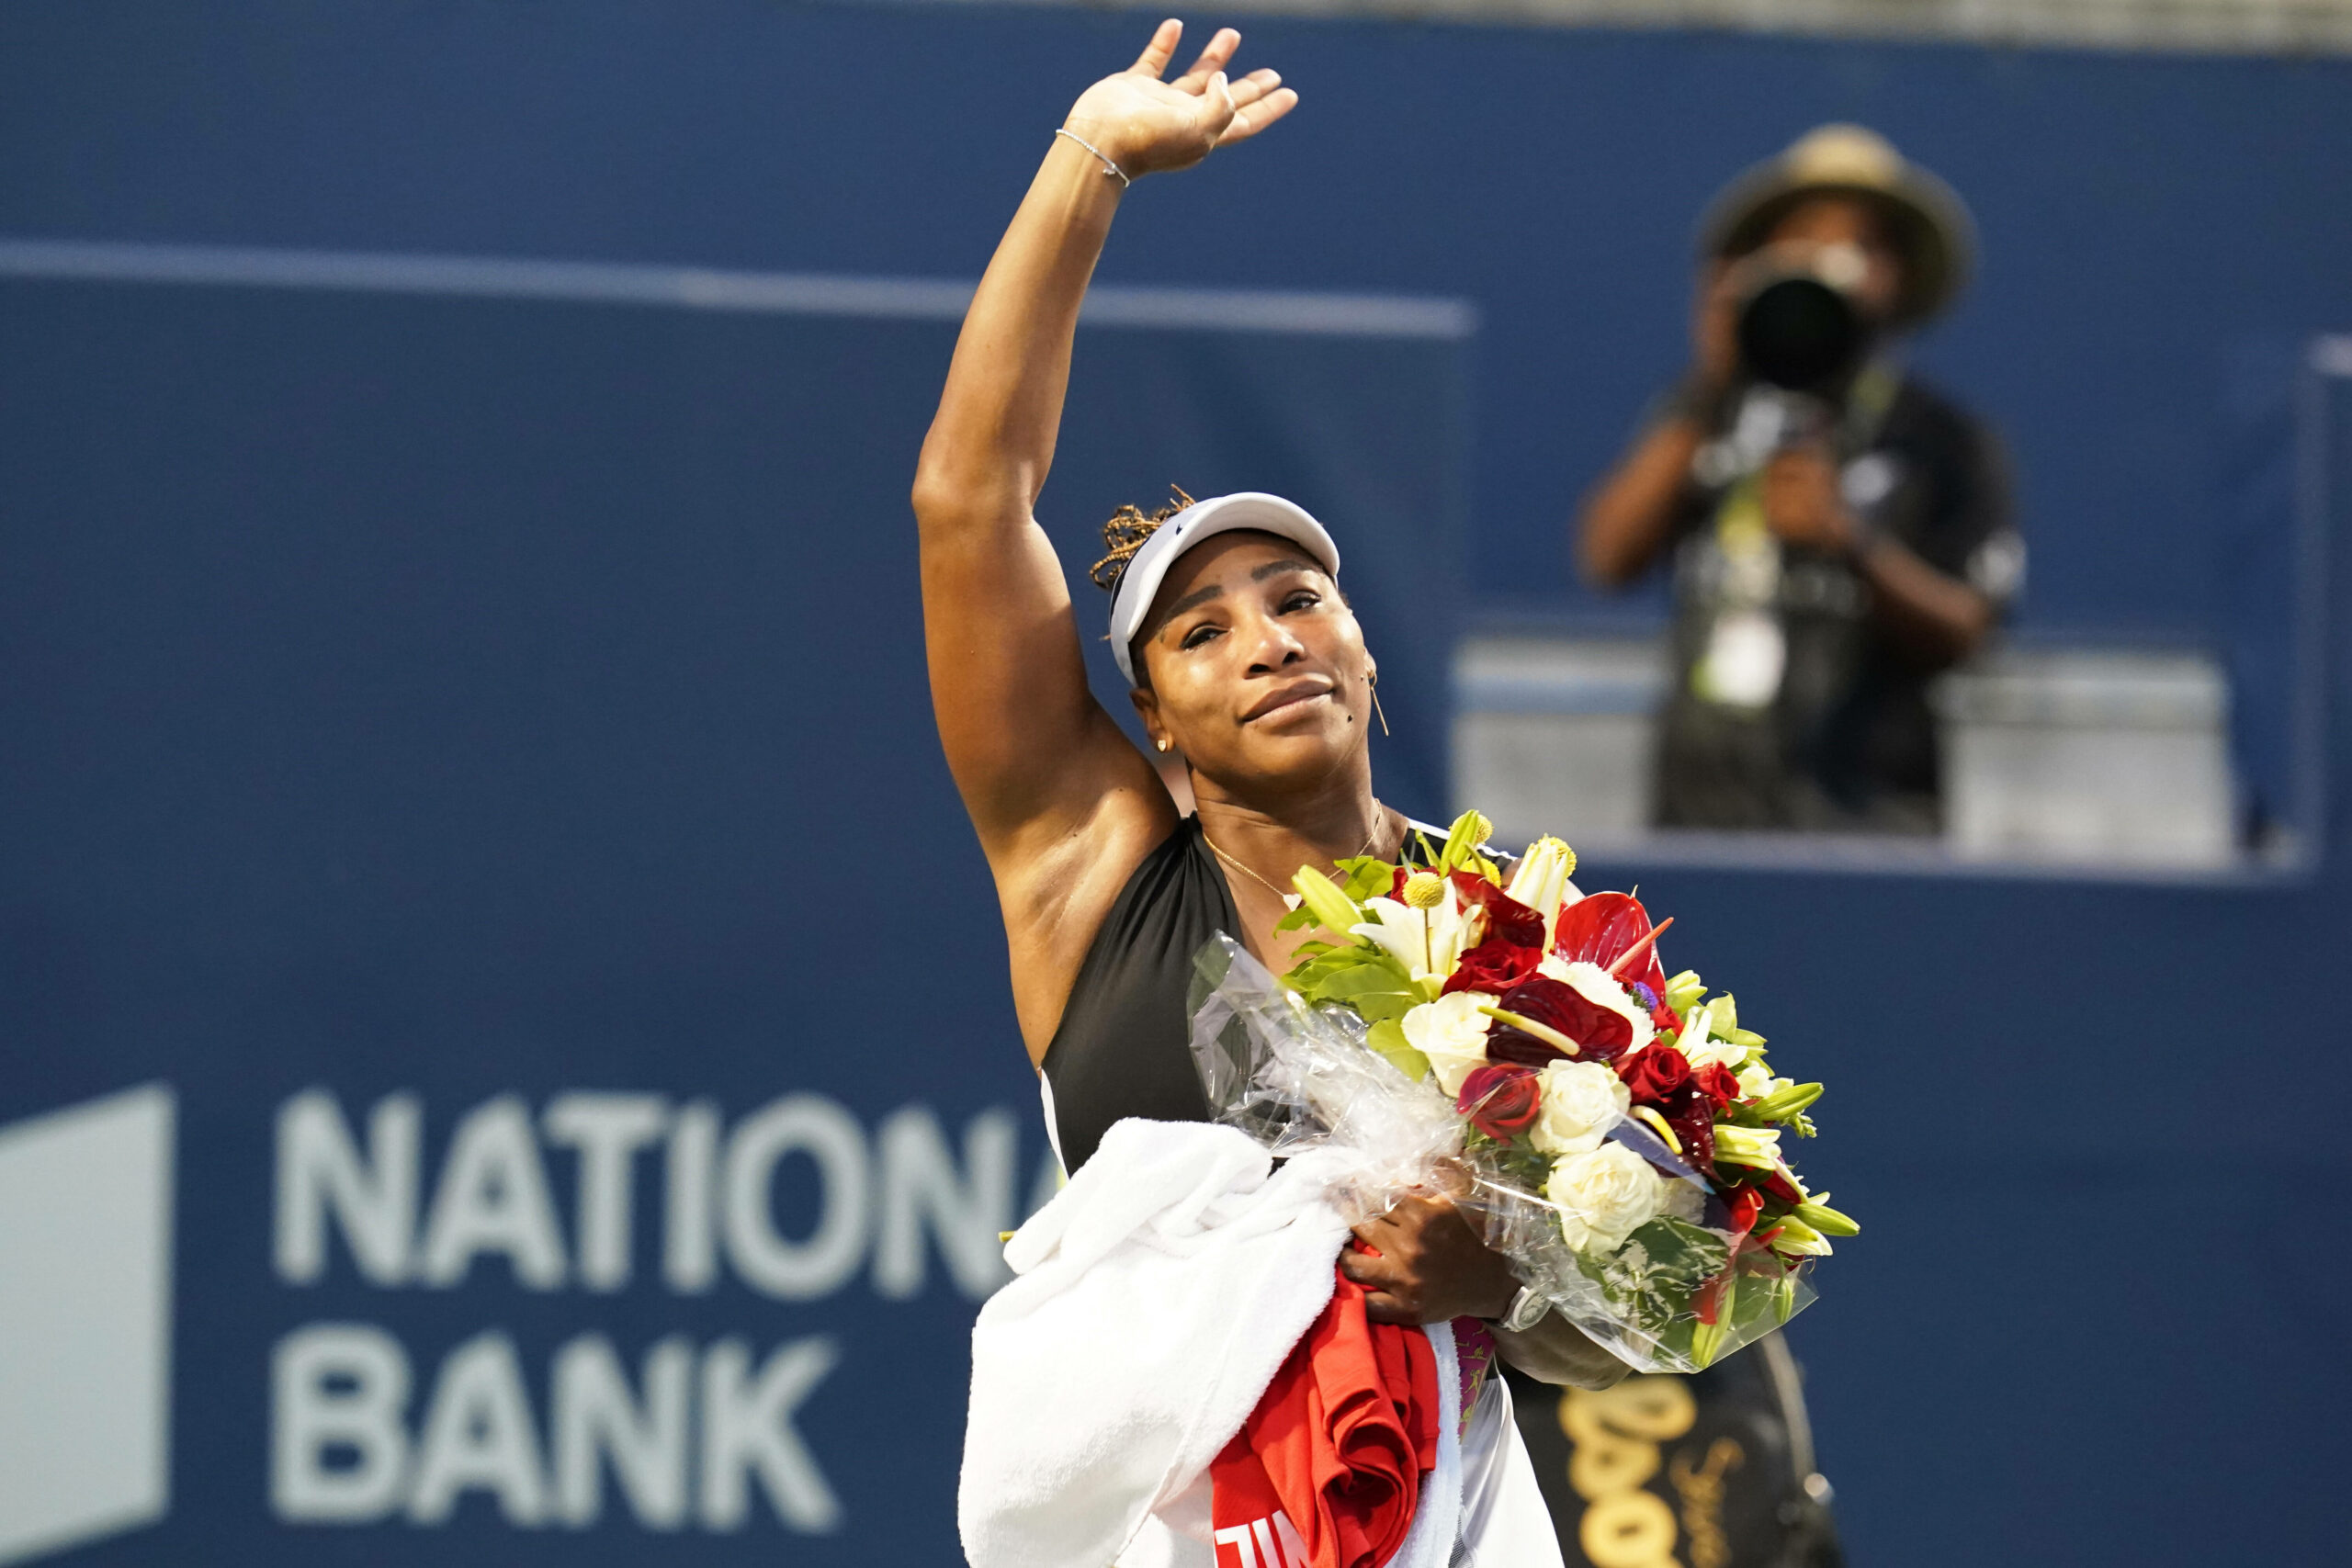 Trotz einer Niederlage wurde Serena Williams von den Fans gefeiert.